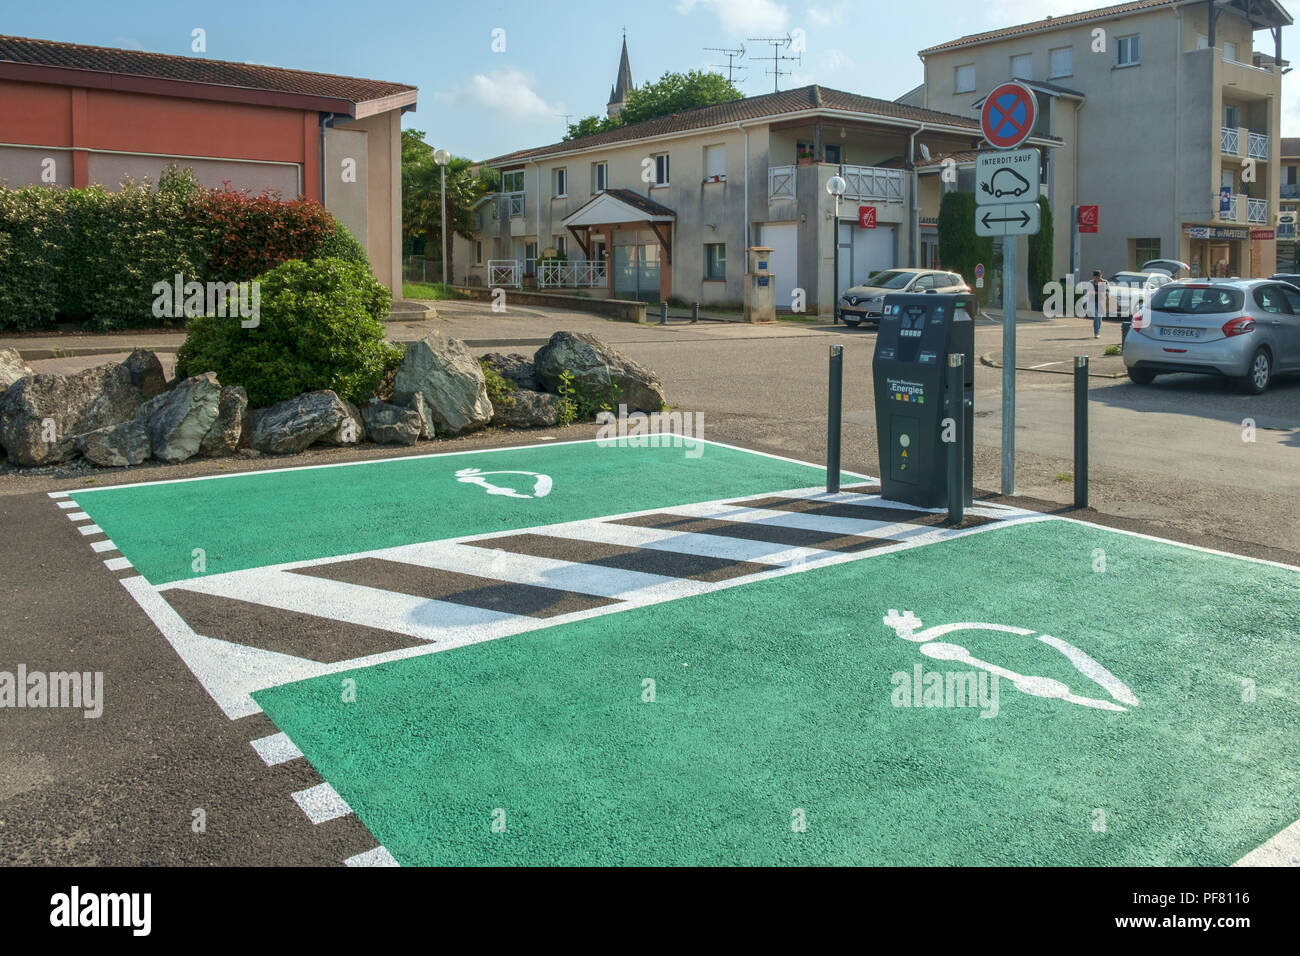 Saint Sylvestre sur Lot, France - 13 juin 2018 : Places de stationnement réservées aux véhicules électriques de charge dans un parking public dans une ville rurale en Lot et Garonne, France Banque D'Images